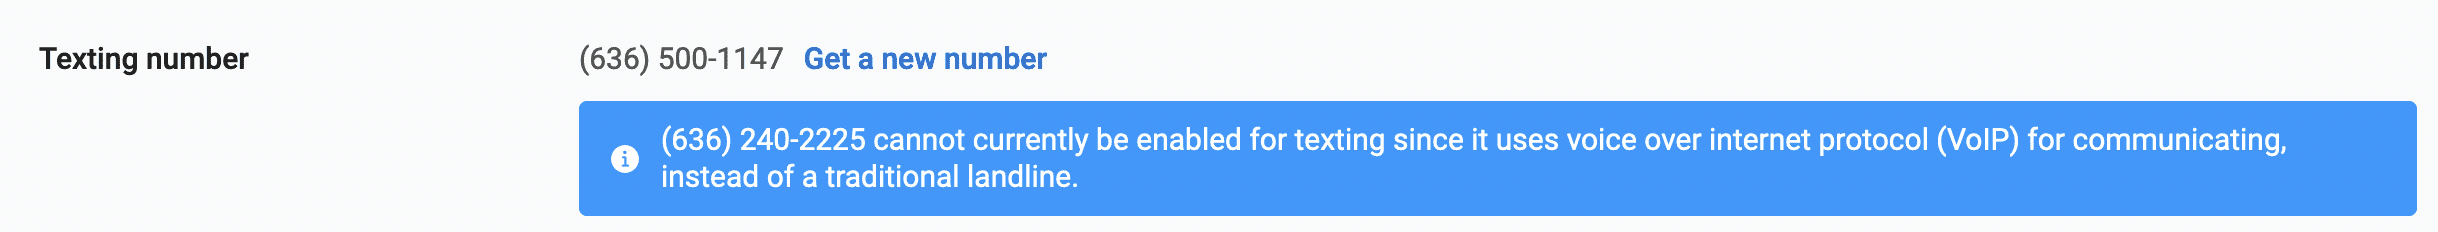 texting-error-message